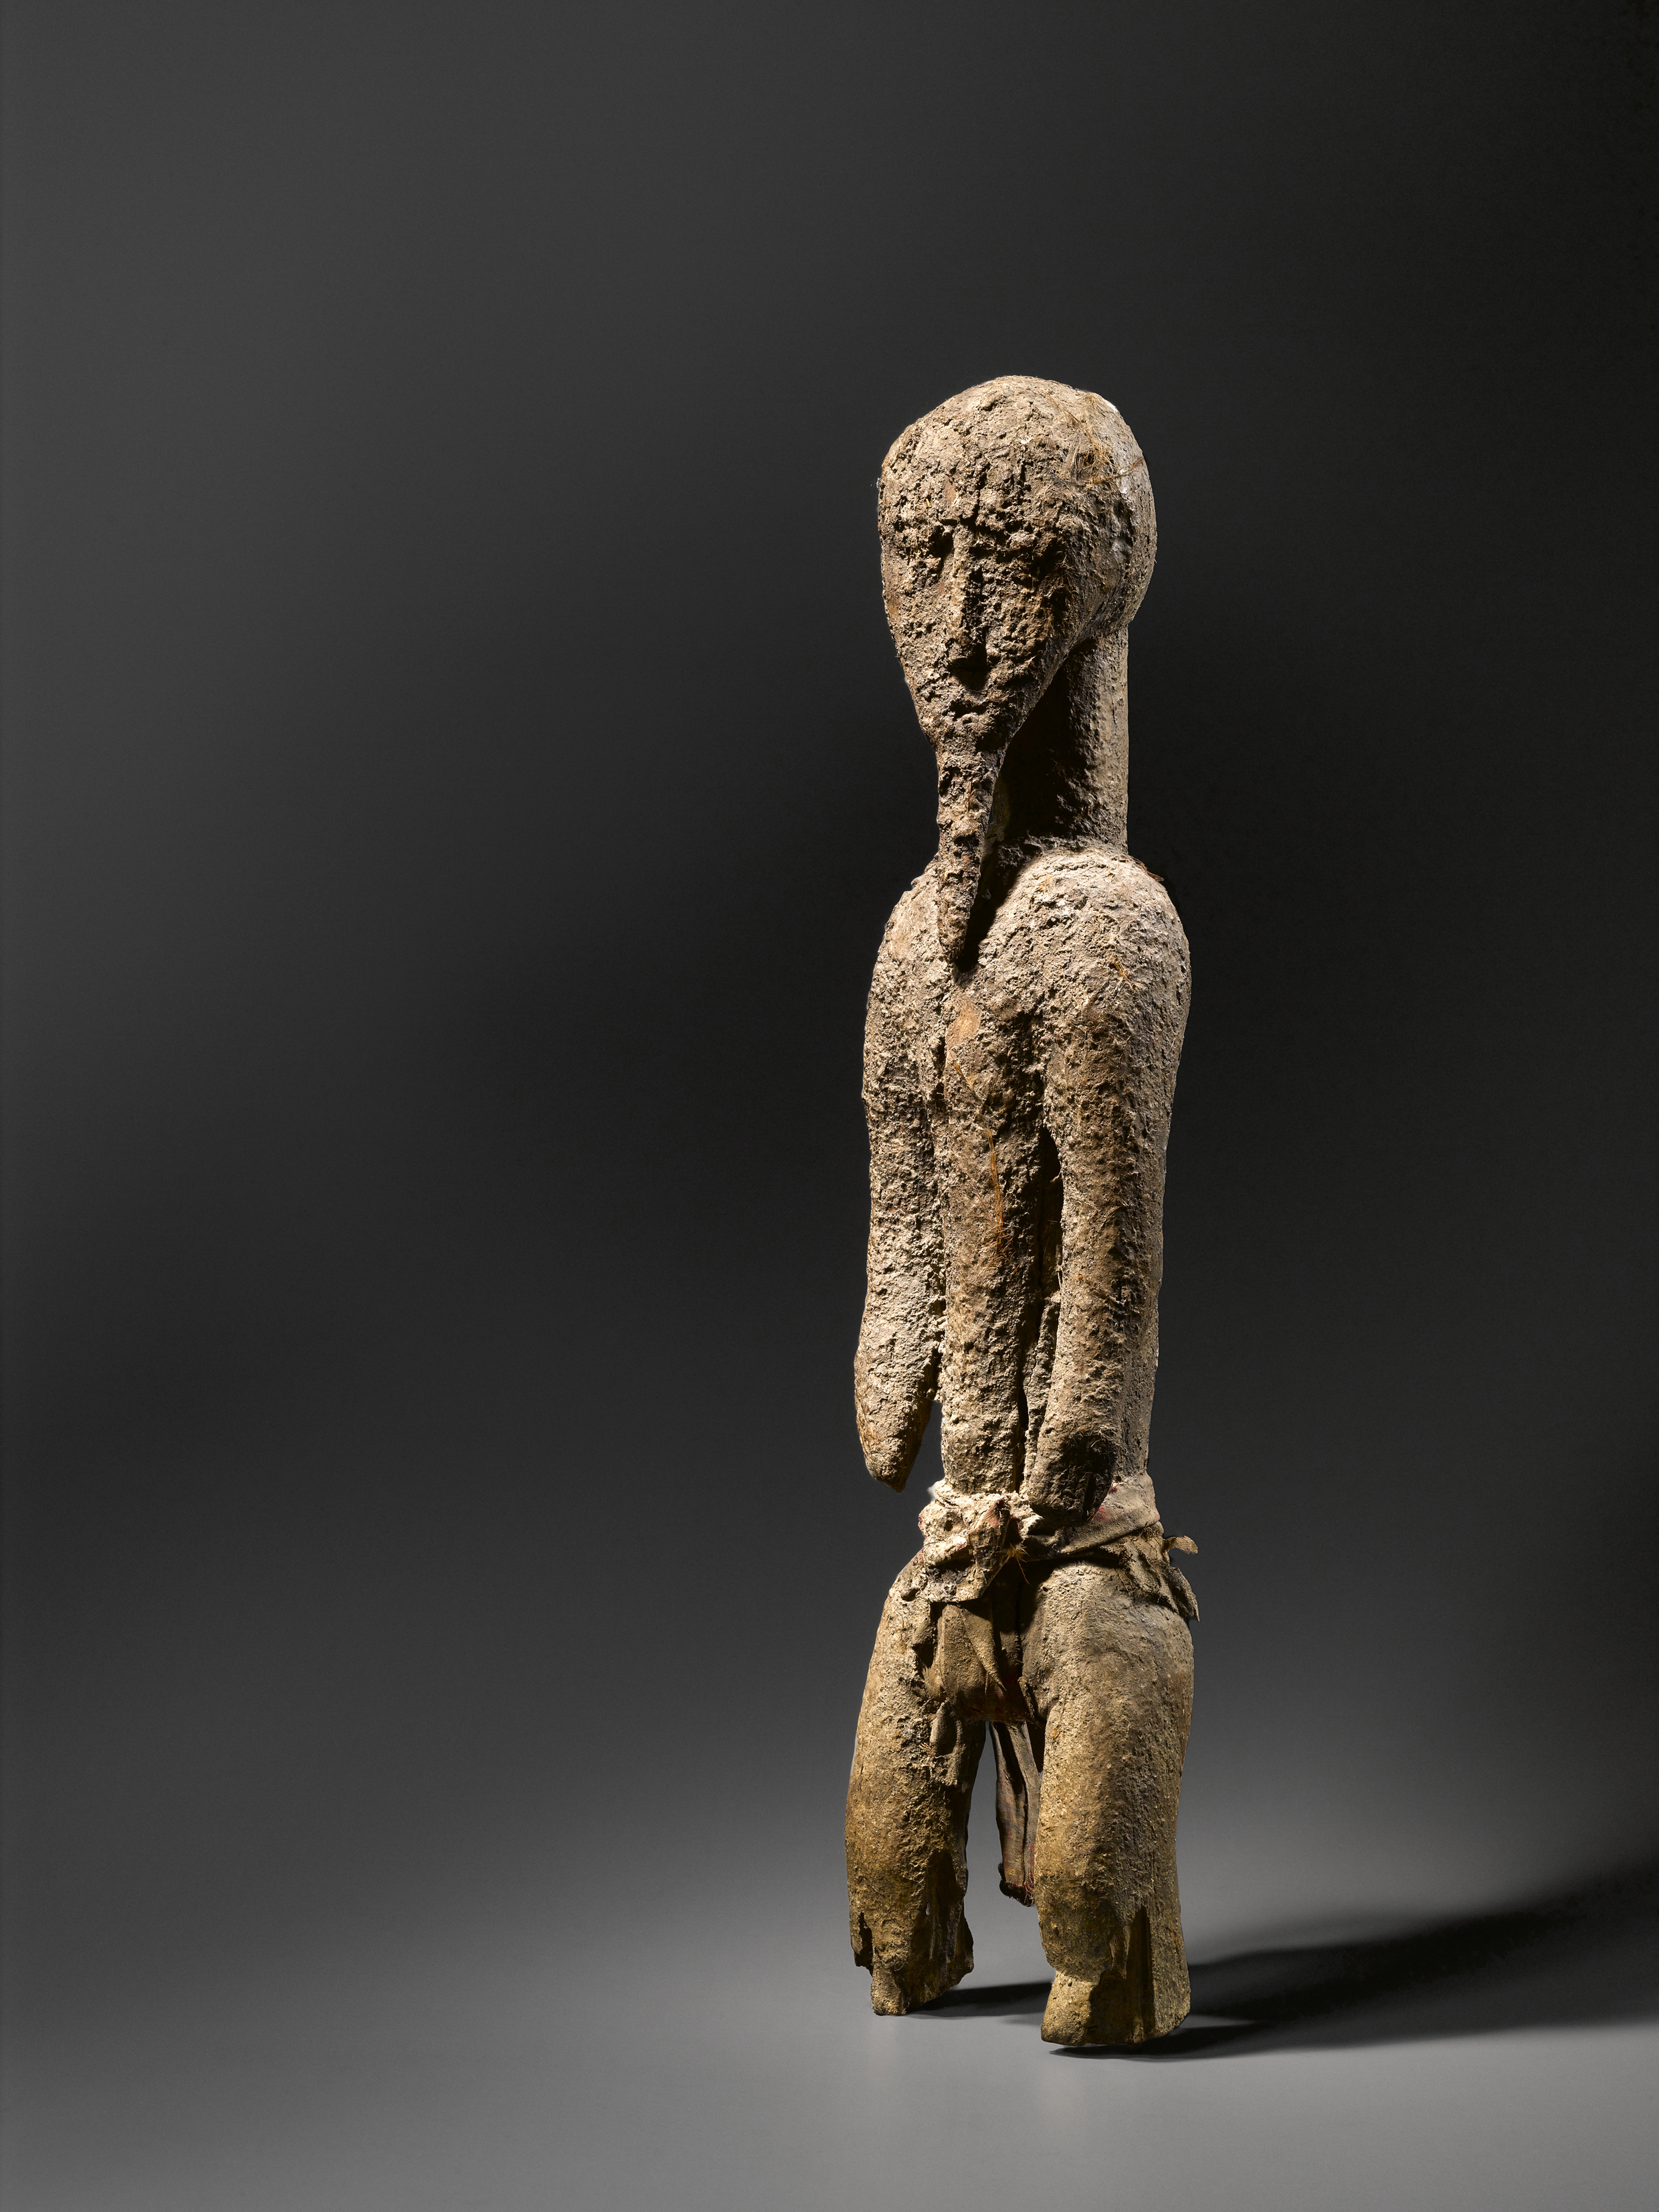 Sculpture Baoulé
Côte d'Ivoire
Bois et tissus. H 57 cm
Publiée in Sacrifice, 2011